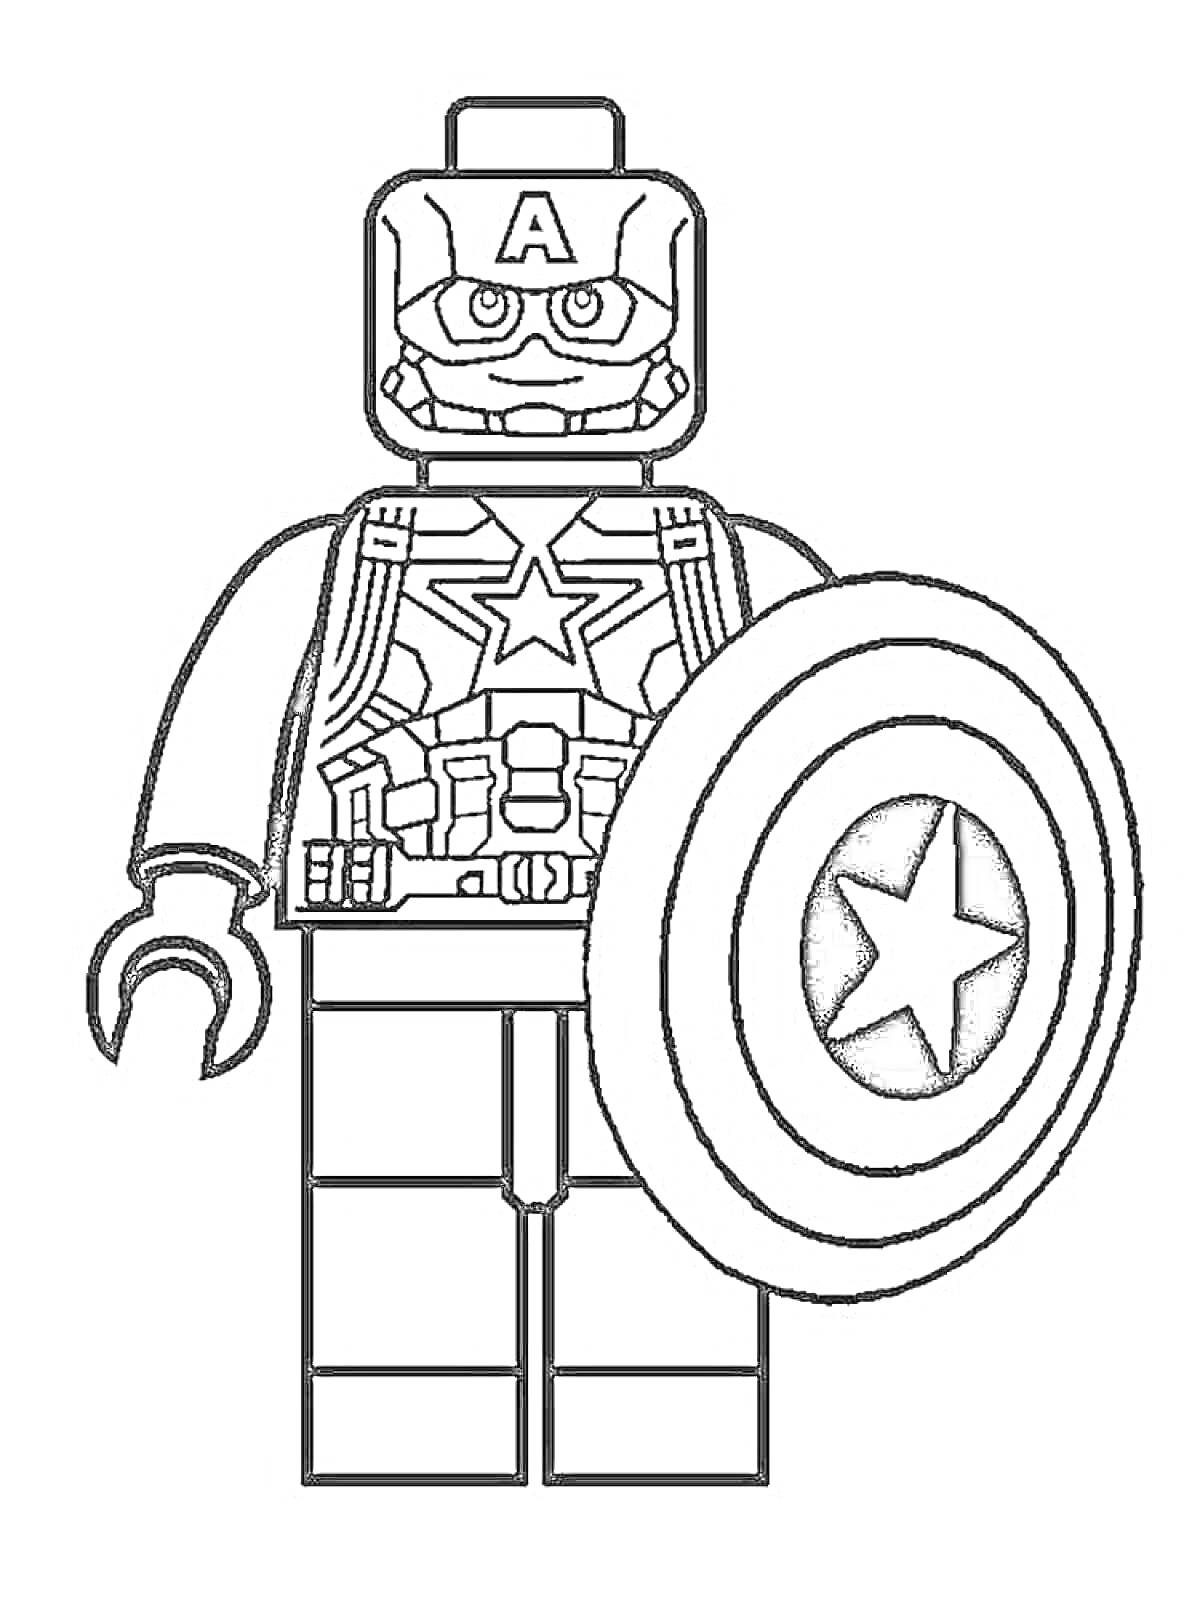 Раскраска Лего-мини-фигурка Капитана Америки с щитом и звездой